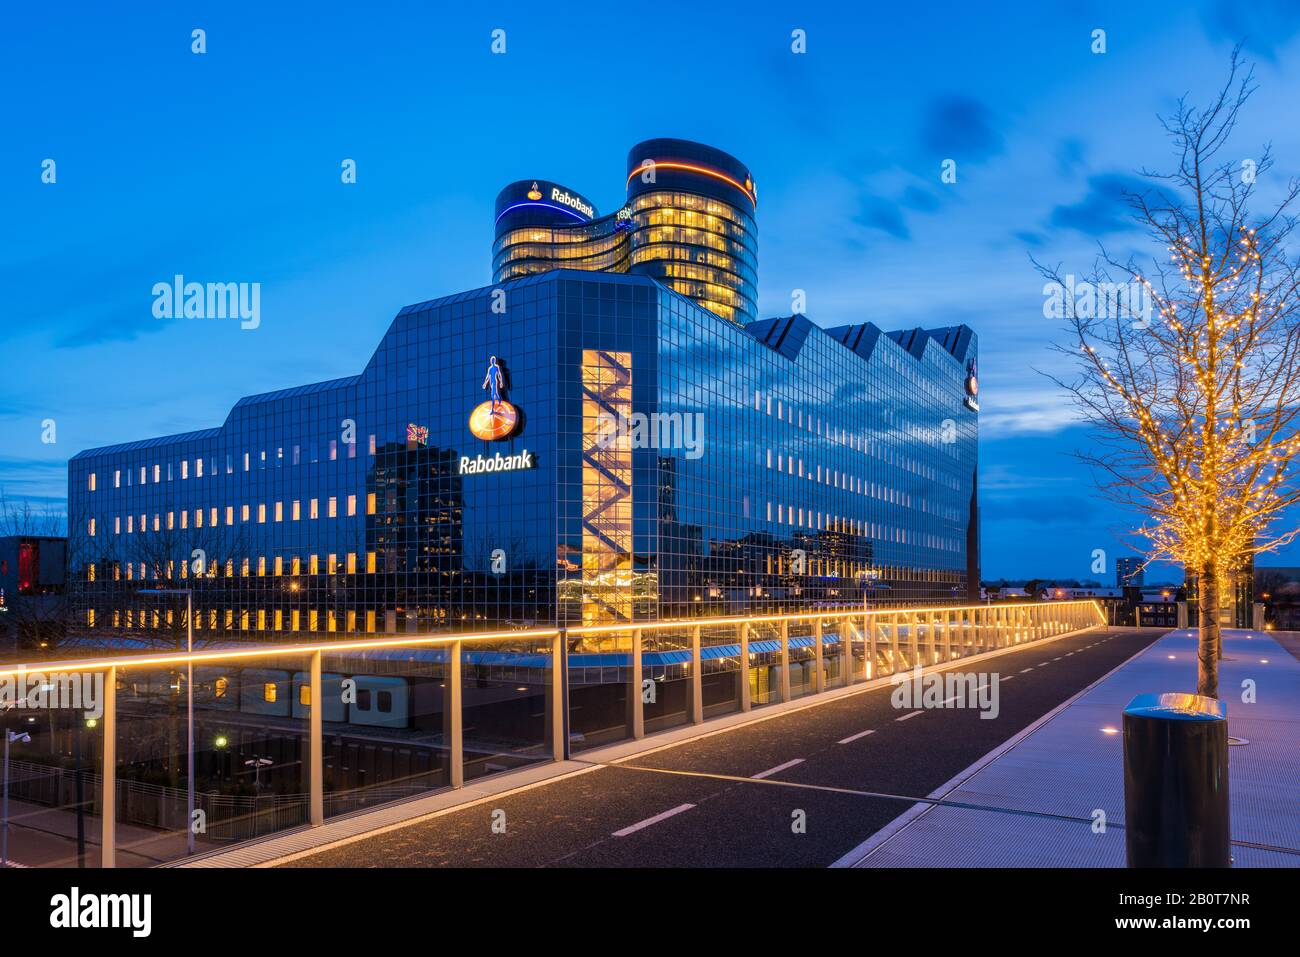 Rabobank Sede Mundial En Utrecht, Países Bajos. Rabobank es una multinacional holandesa de servicios bancarios y financieros. Foto de stock